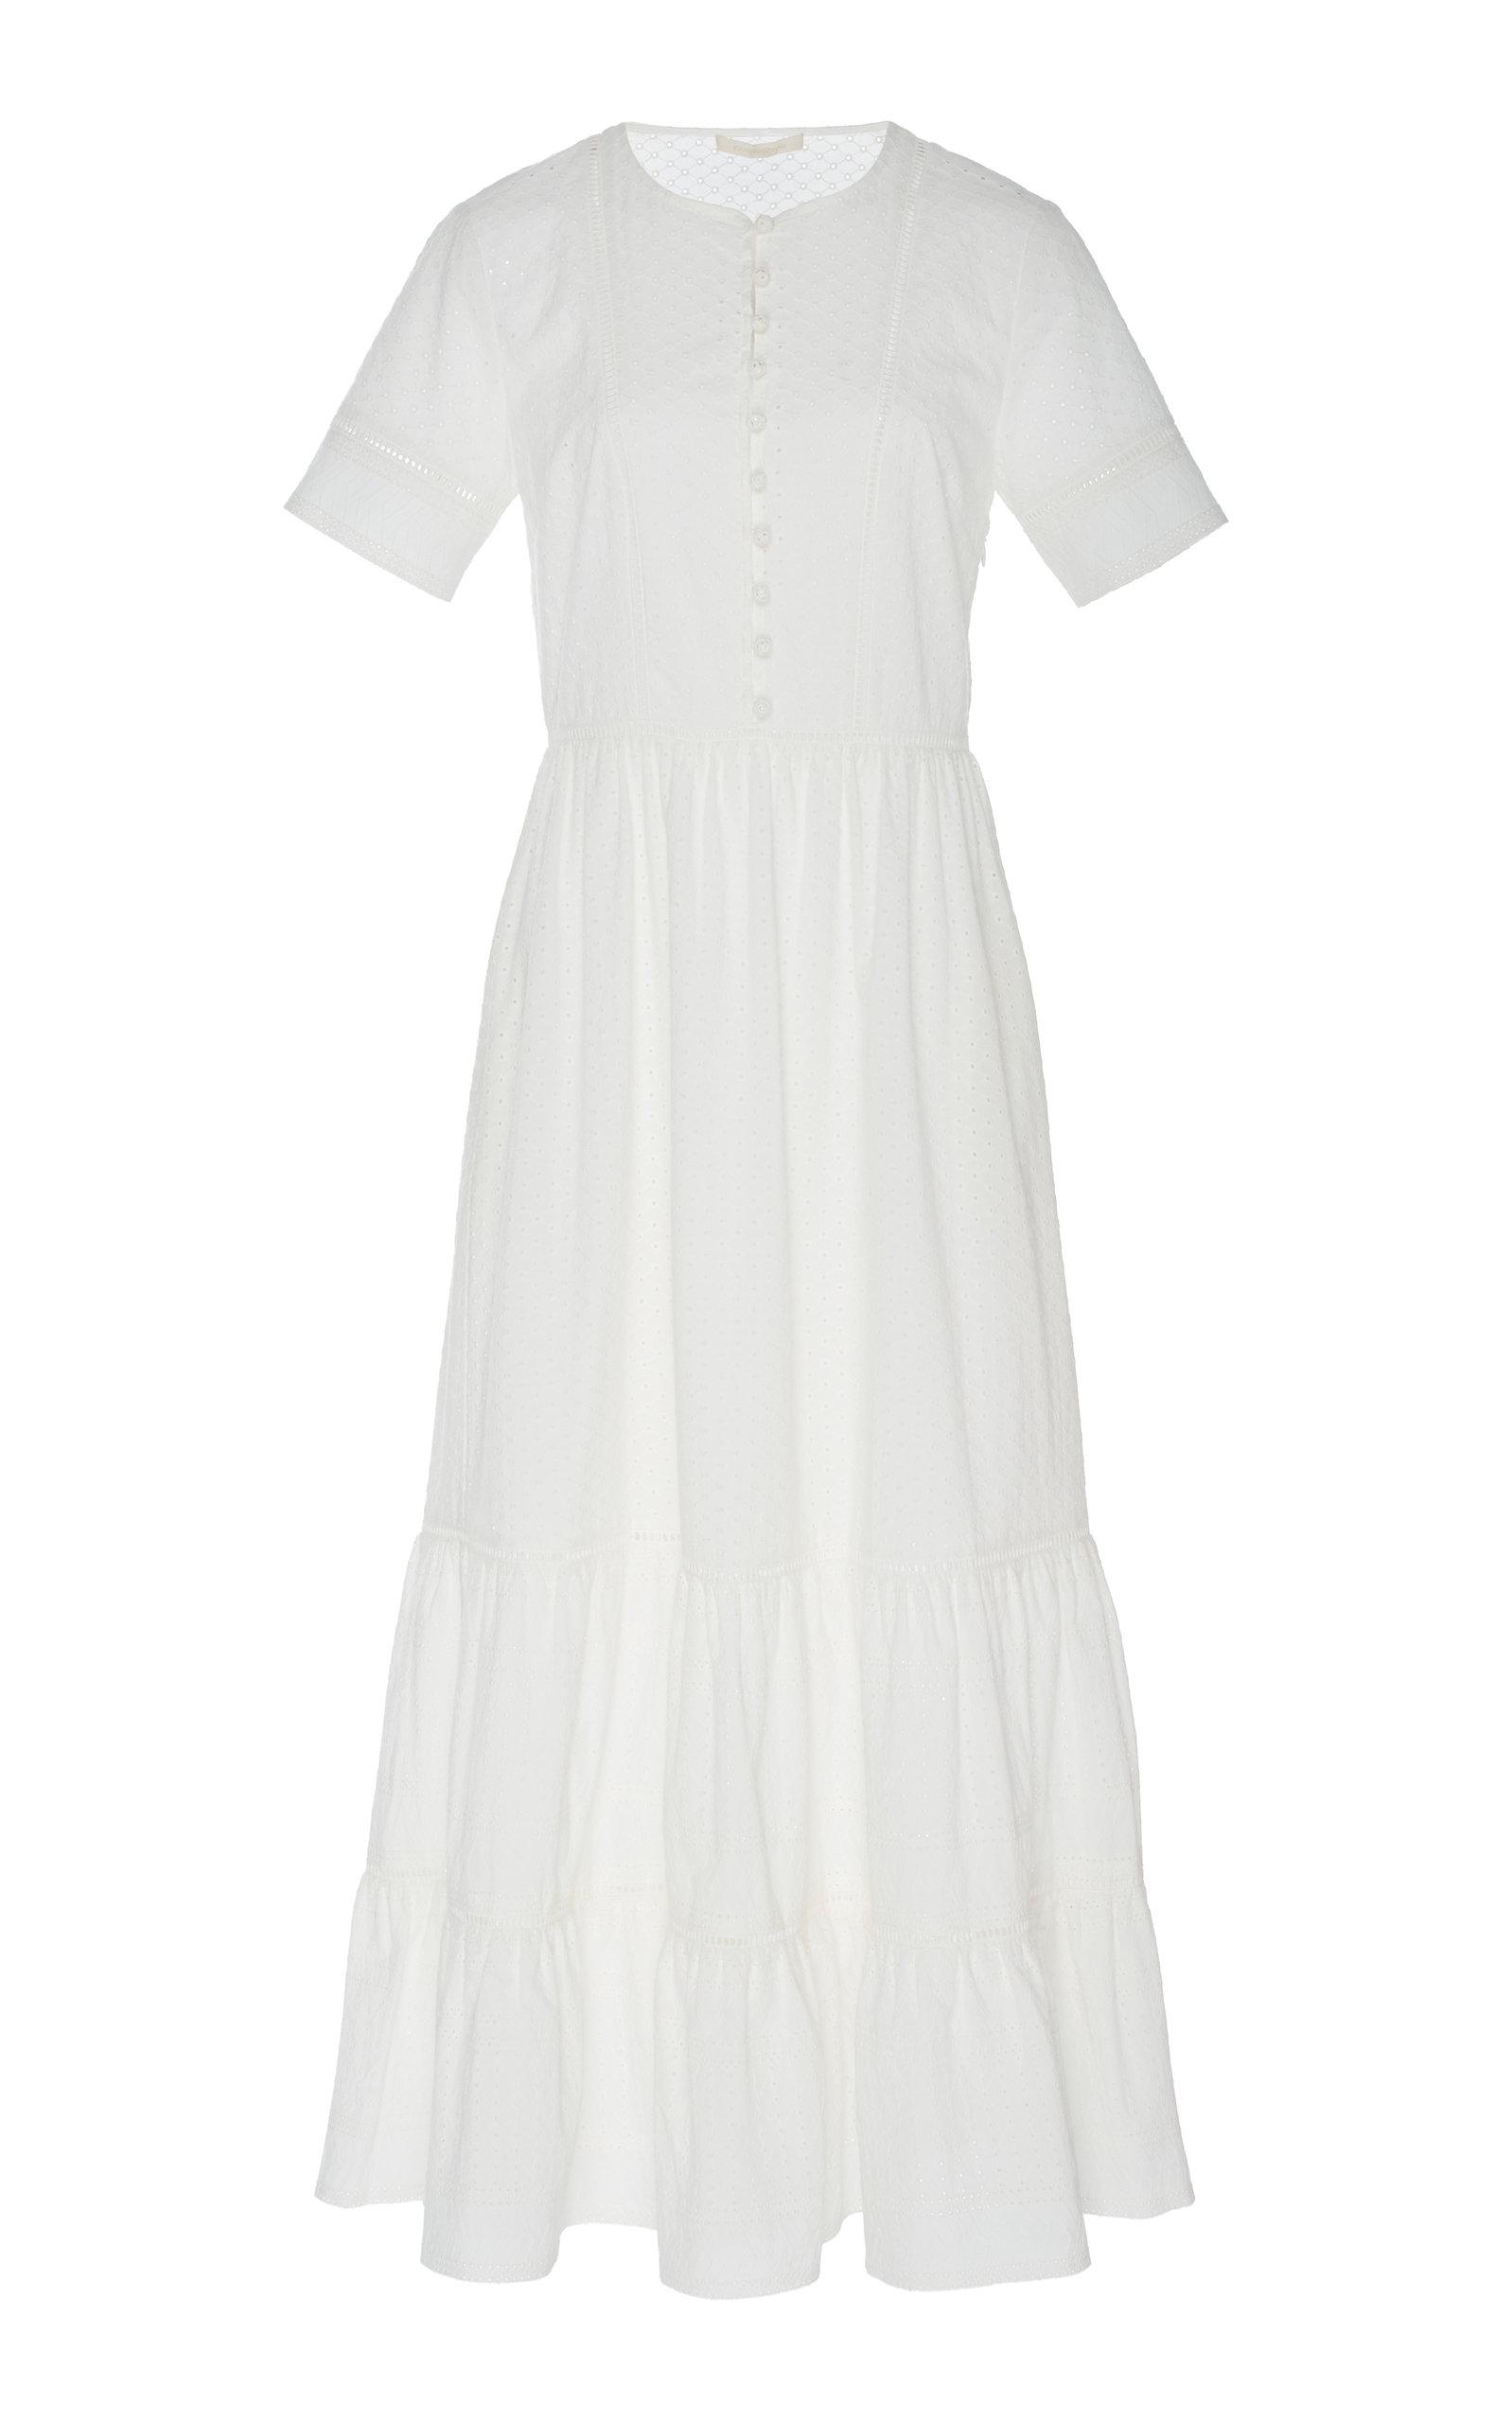 Jonathan Simkhai Eyelet Cotton Maxi Dress in White - Lyst